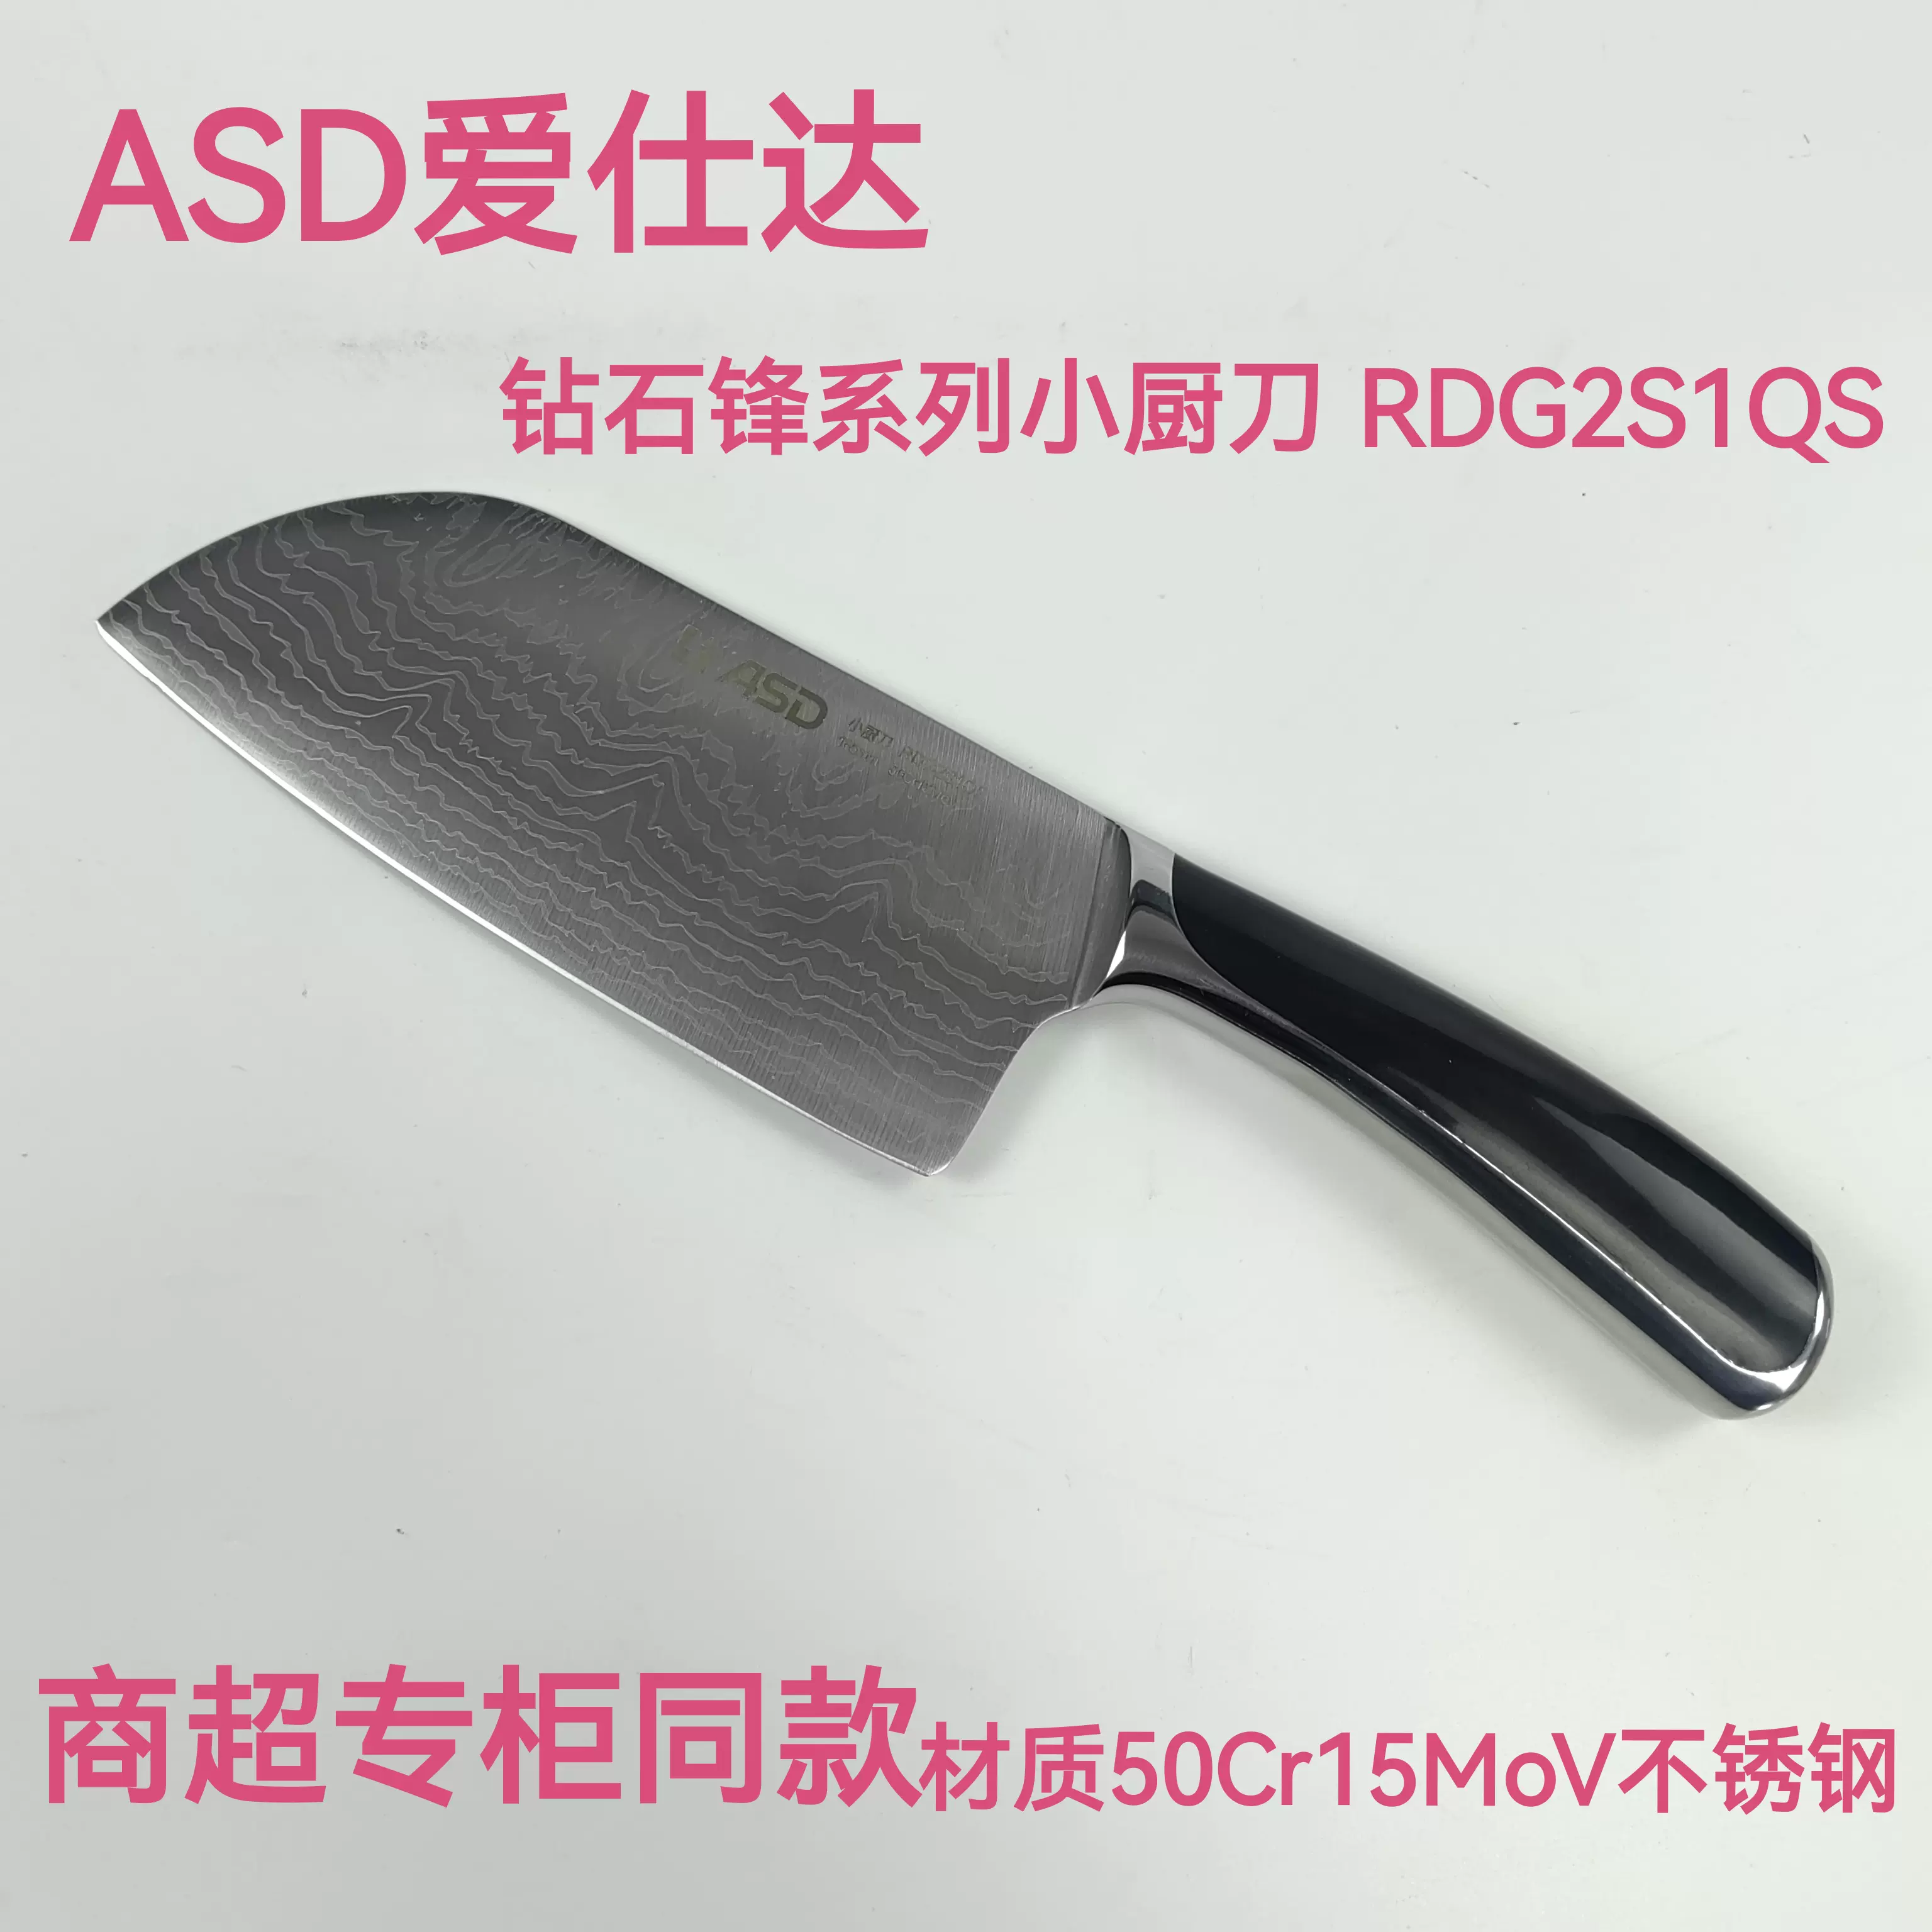 ASD/爱仕达切片刀RDG2K4Q家用闪电锋酷锐系列不锈钢切肉刀切菜刀-Taobao 